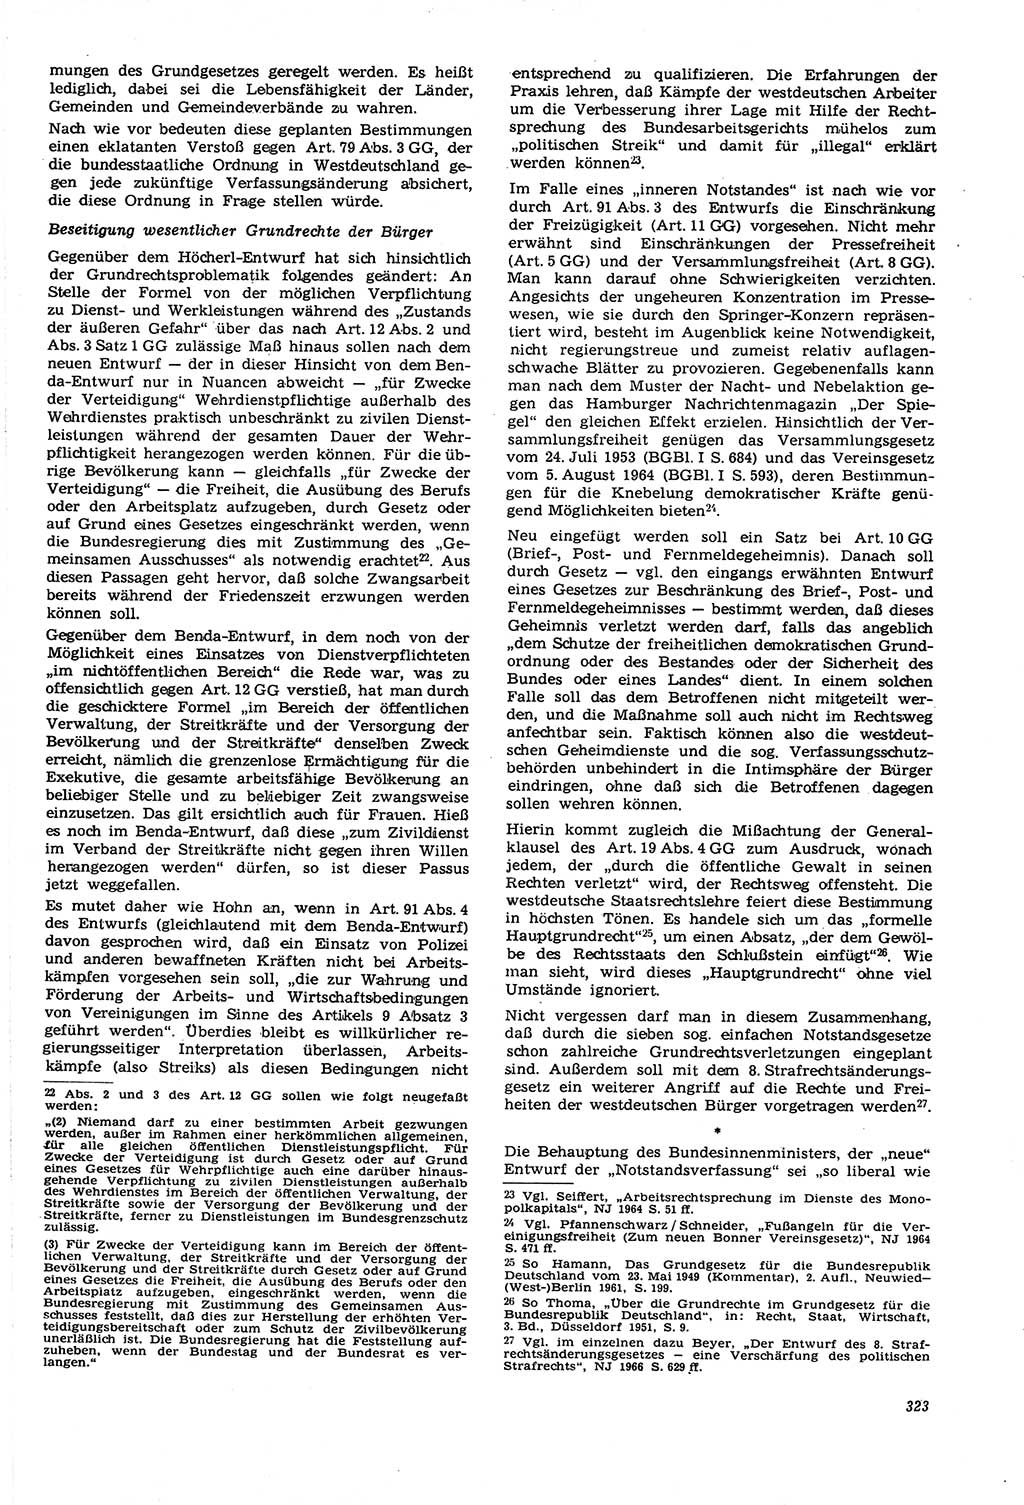 Neue Justiz (NJ), Zeitschrift für Recht und Rechtswissenschaft [Deutsche Demokratische Republik (DDR)], 21. Jahrgang 1967, Seite 323 (NJ DDR 1967, S. 323)